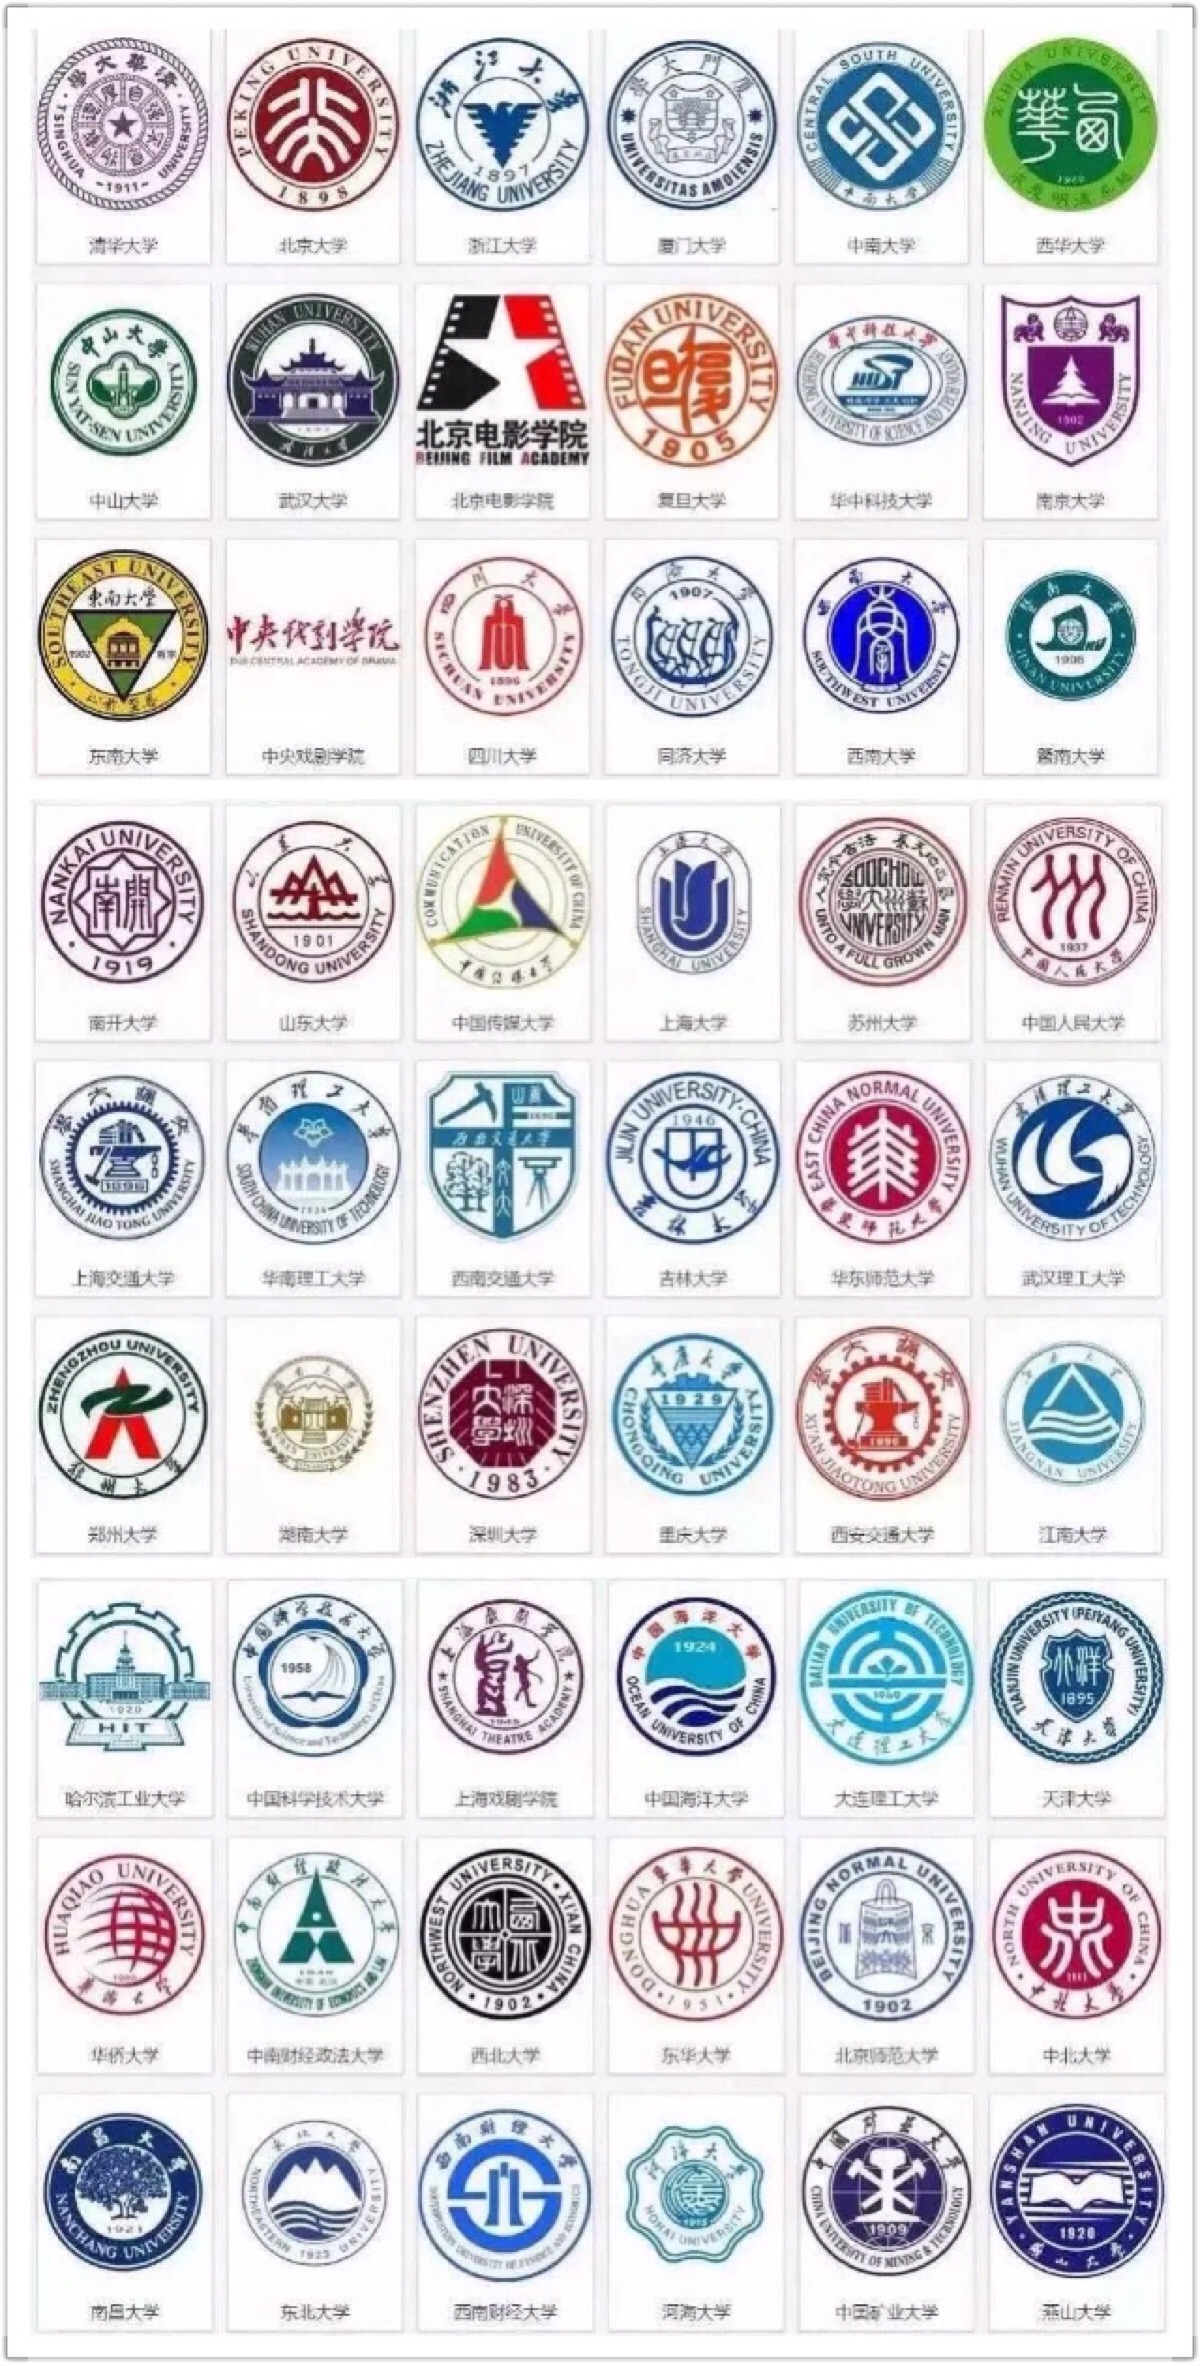 中国大学logo一览